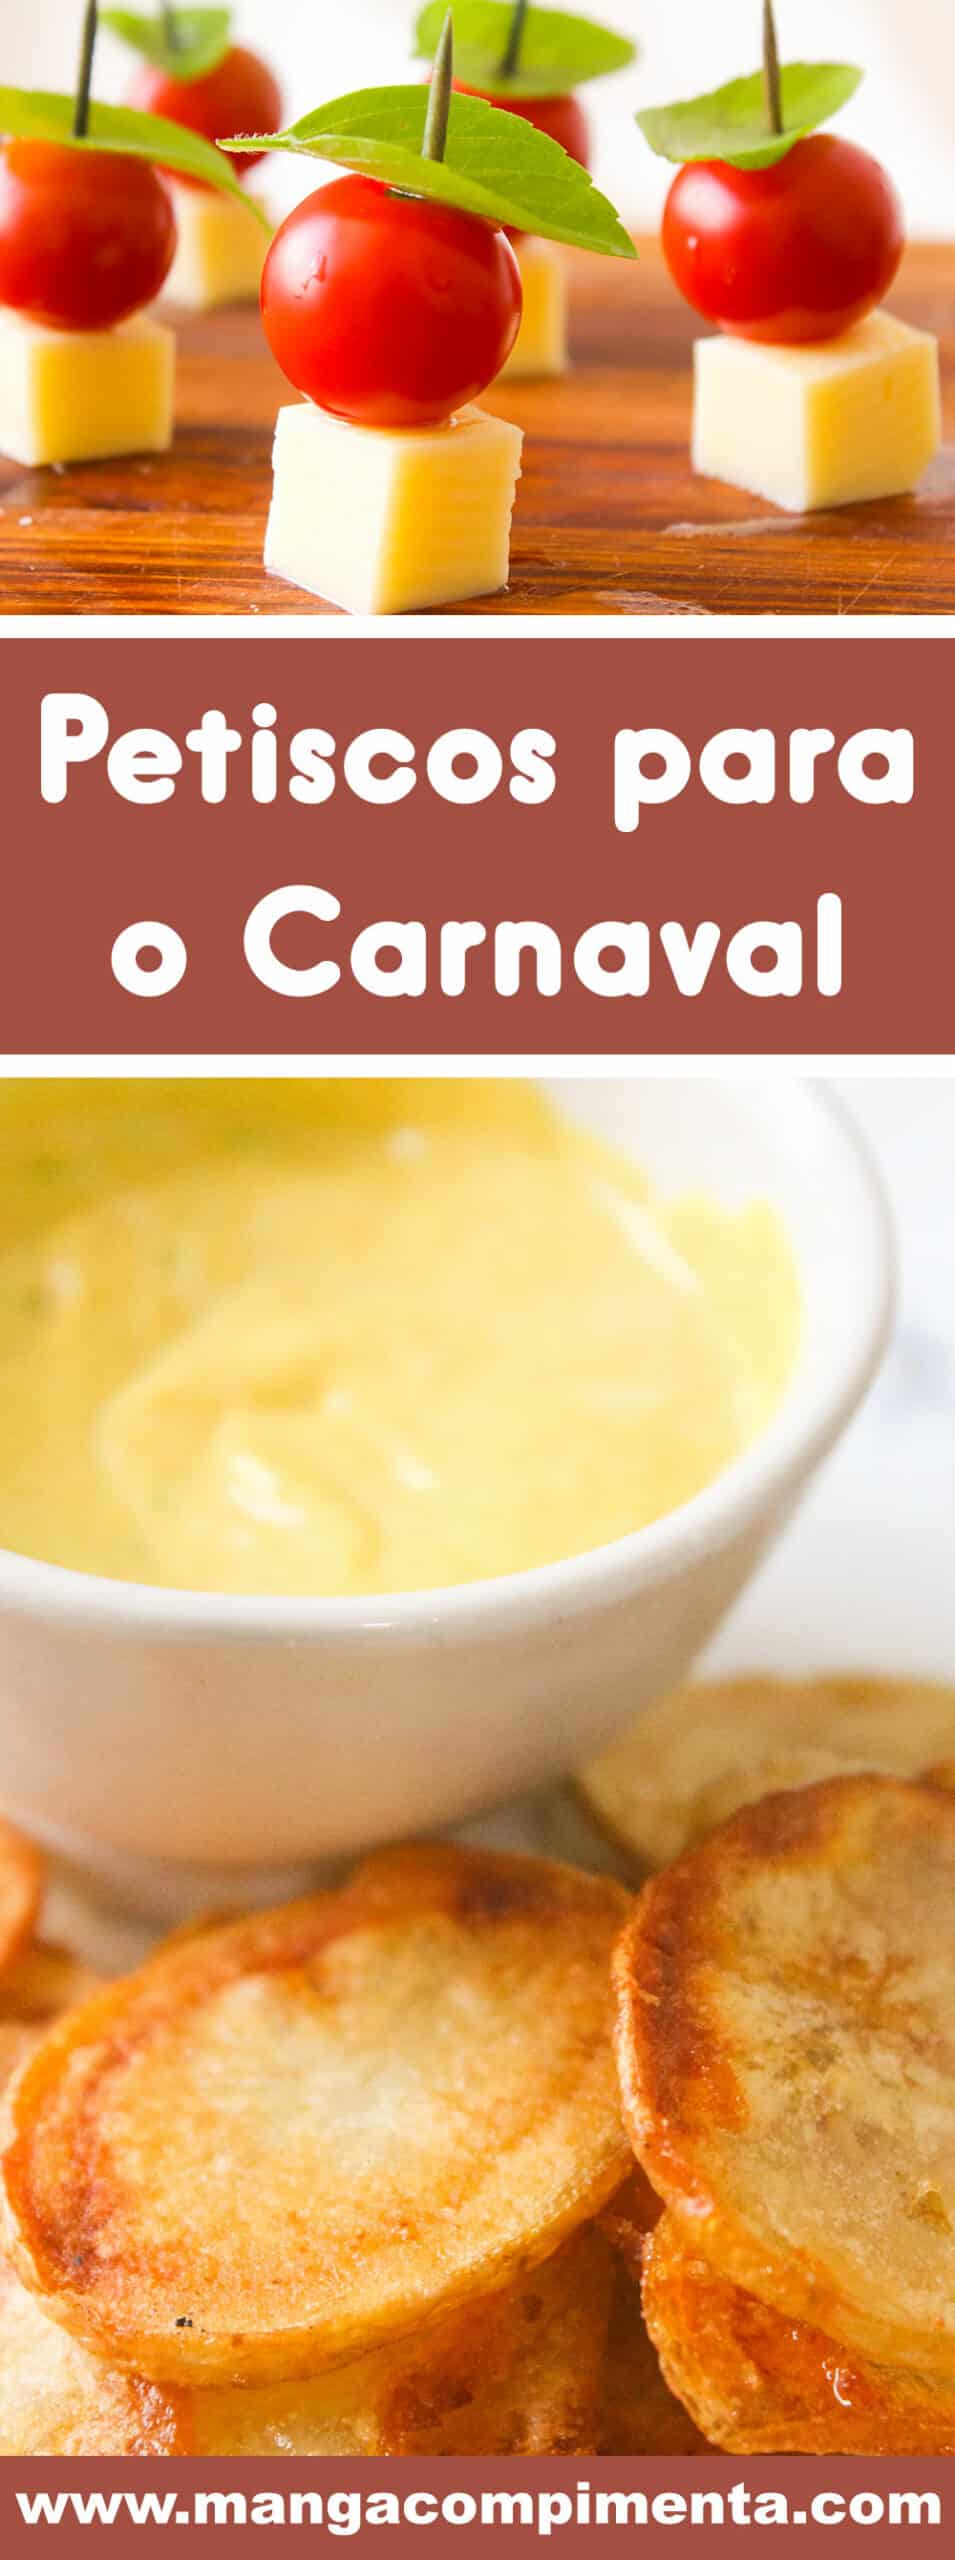 20 Receitas de Petiscos para o Carnaval - cozinha combina com samba no pé, prepare e chame os amigos para essa folia!